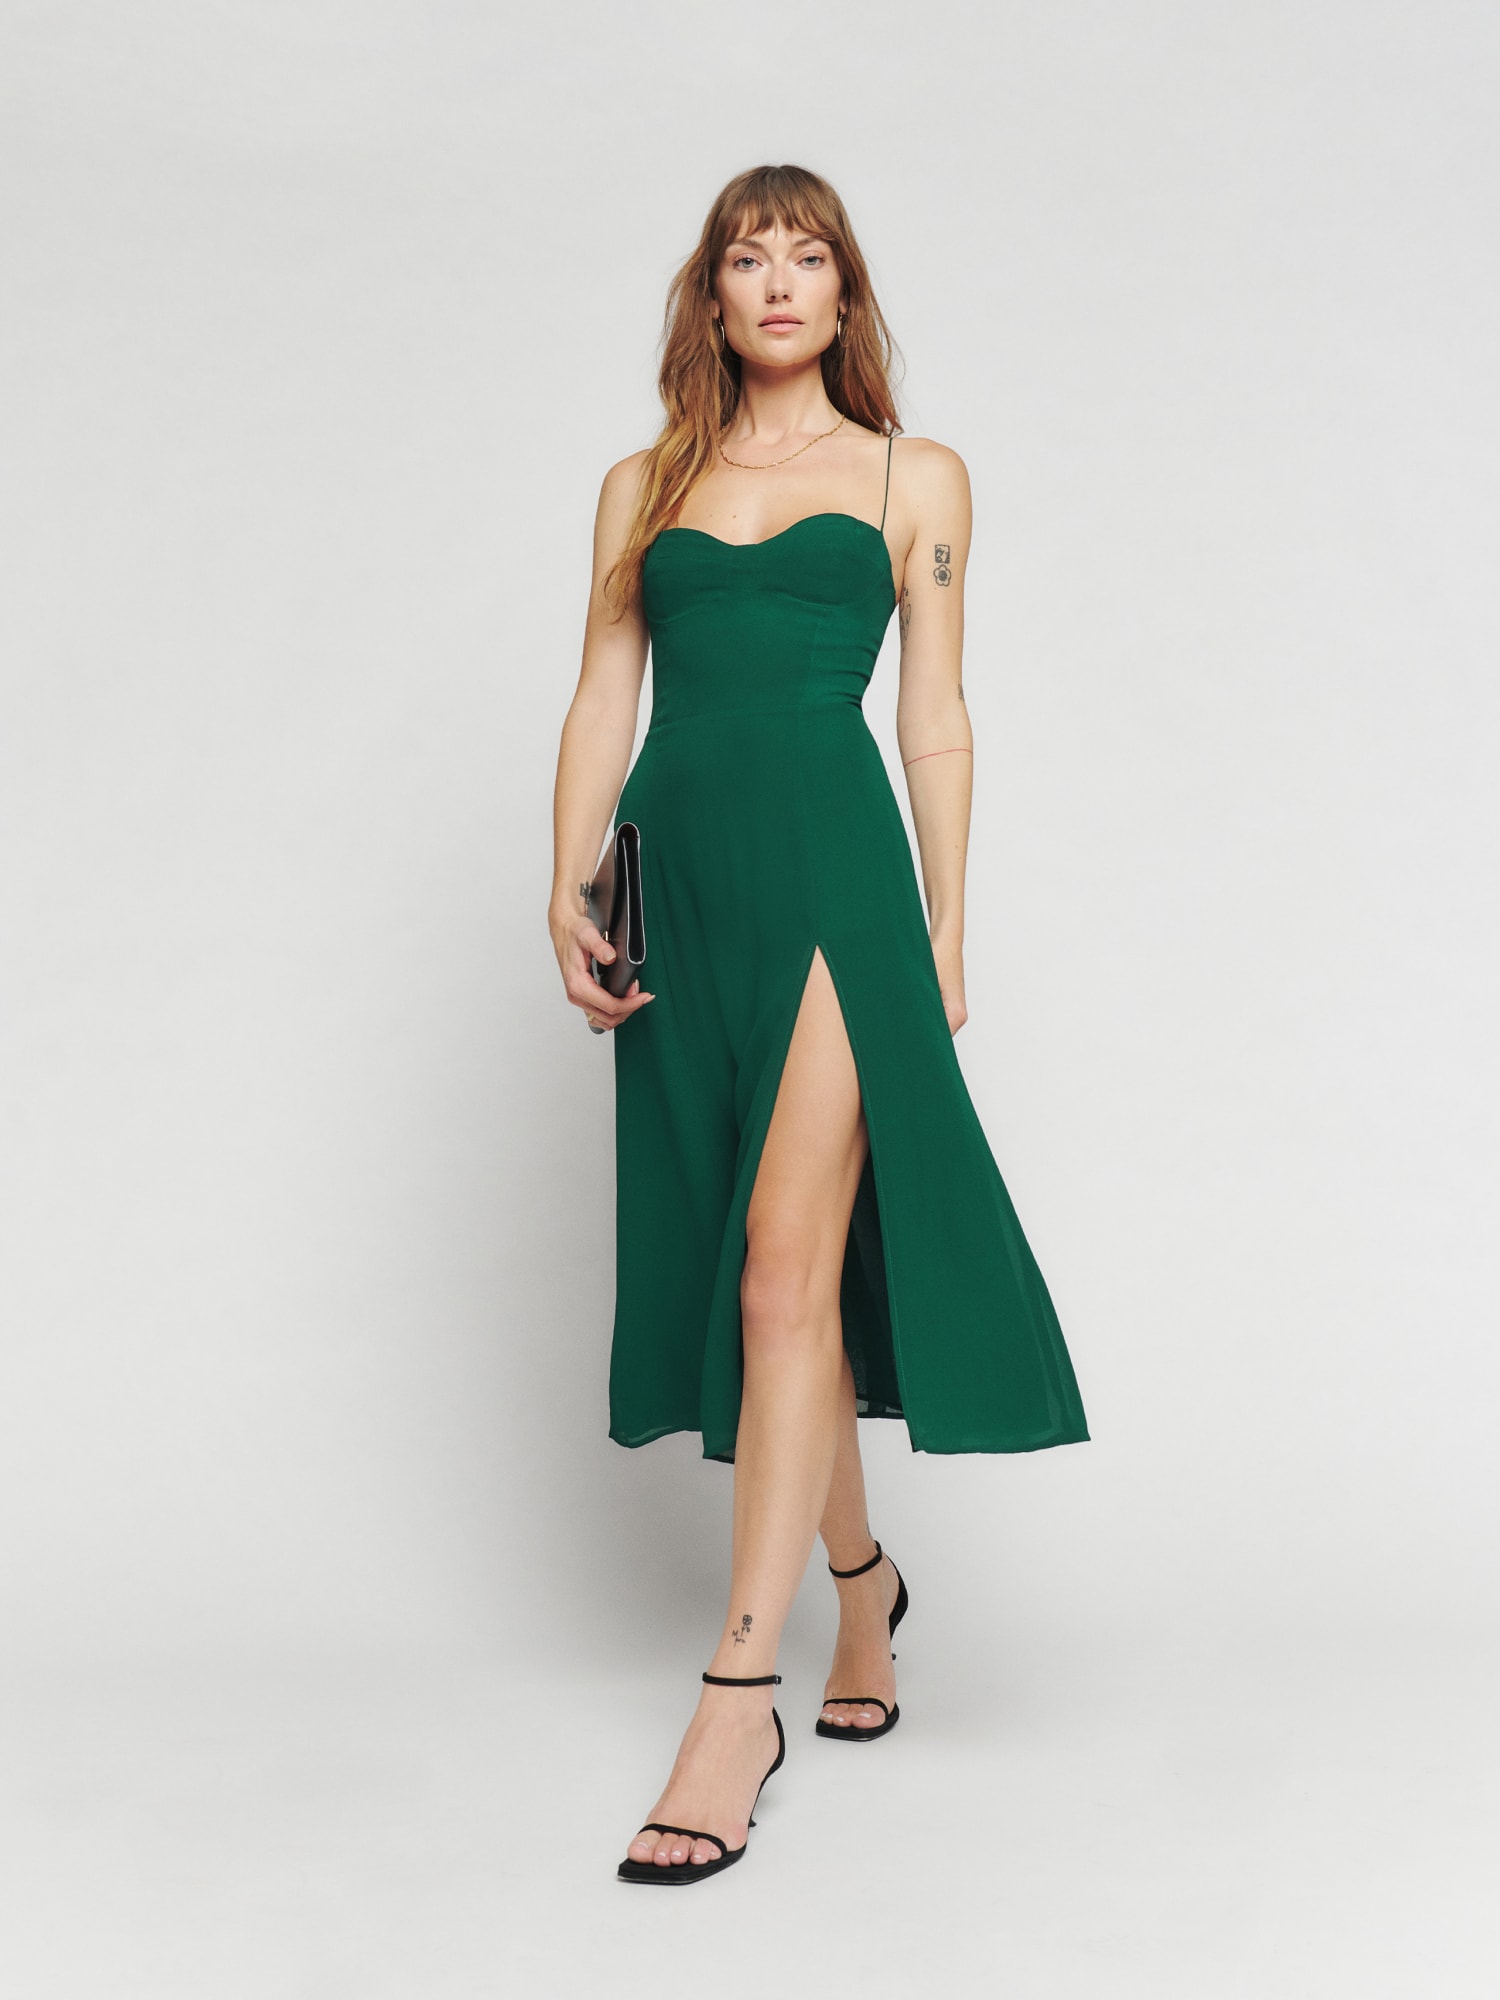 Reformation Emerald Green Dress | vlr.eng.br